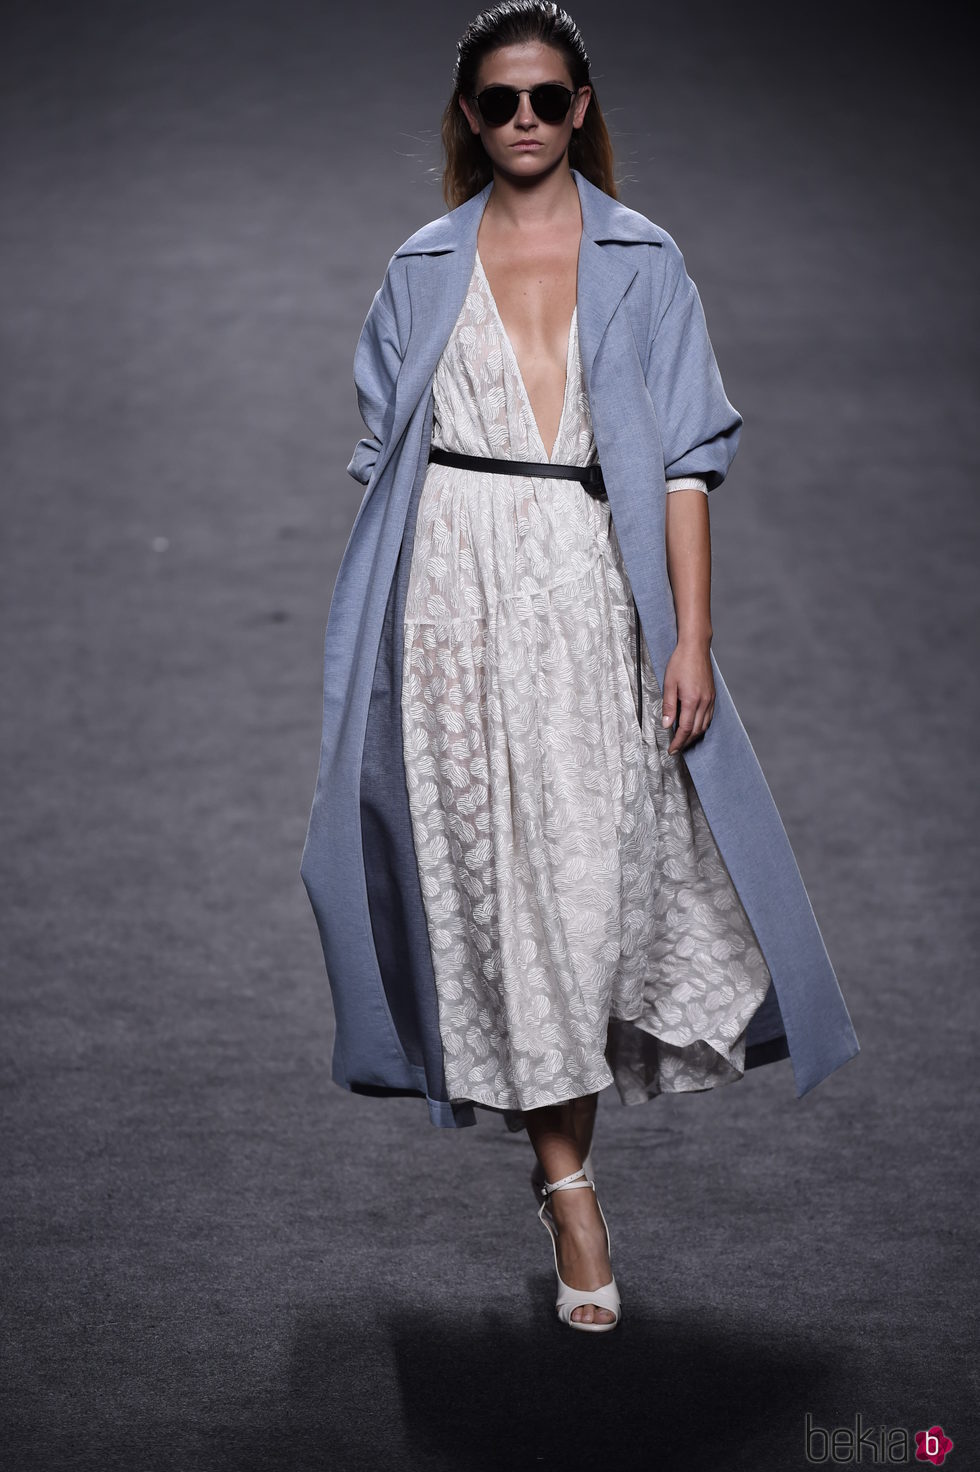 Vestido blanco escotado y chaqueta azul de Roberto Torretta primavera/verano 2018 para Madrid Fashion Week